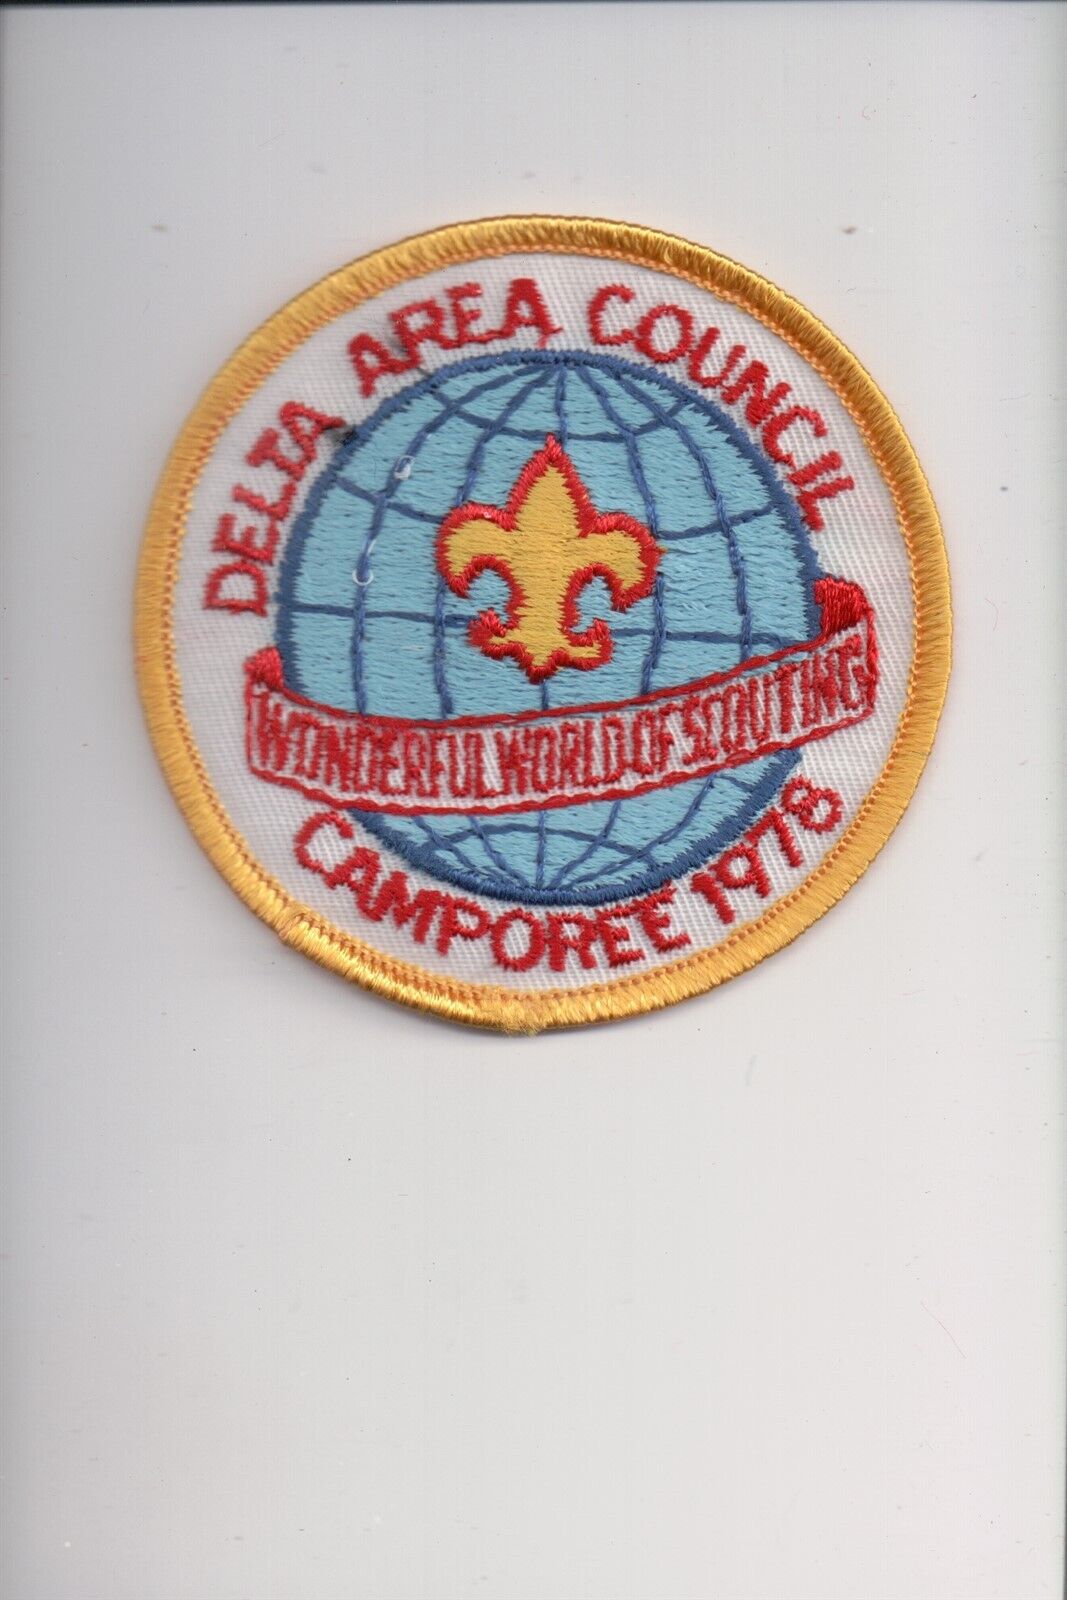 1978 Delta Area Council Camporee patch